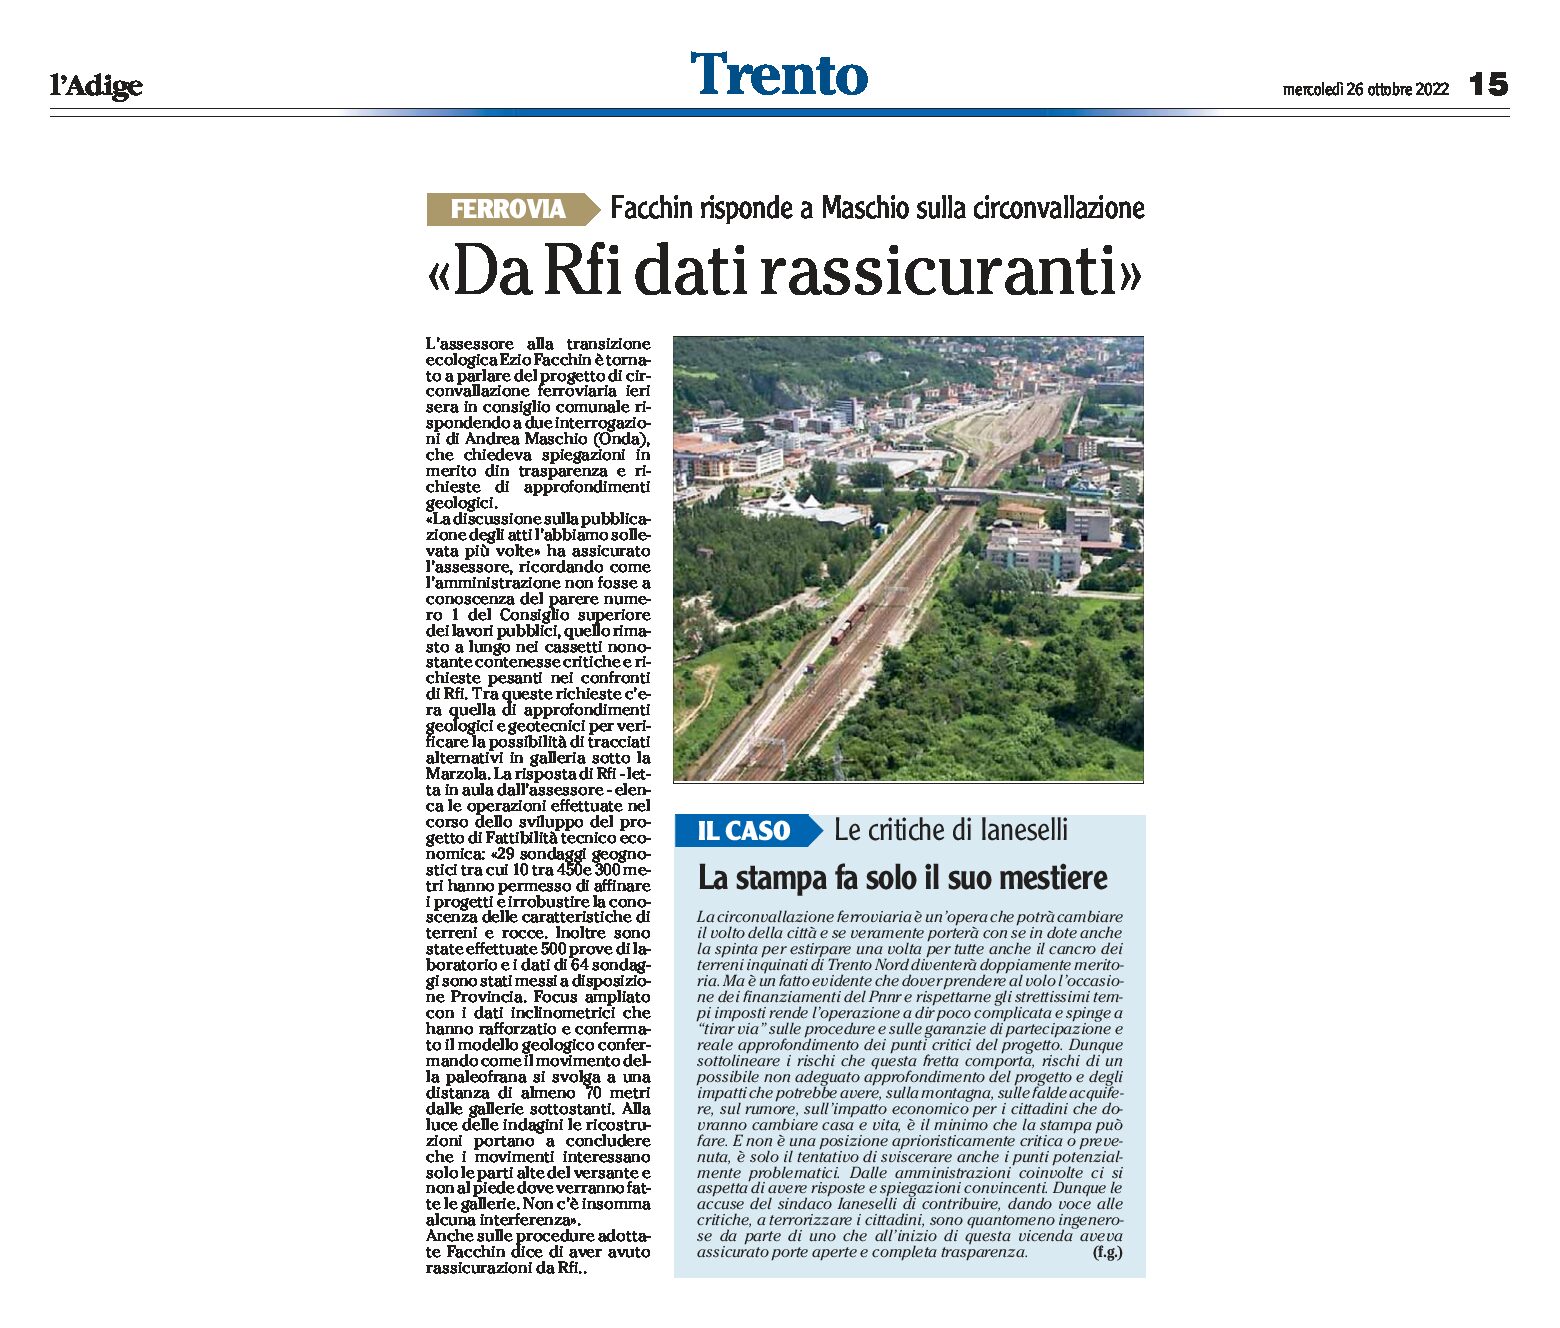 Trento, circonvallazione: Facchin risponde a Maschio, da Rfi dati rassicuranti